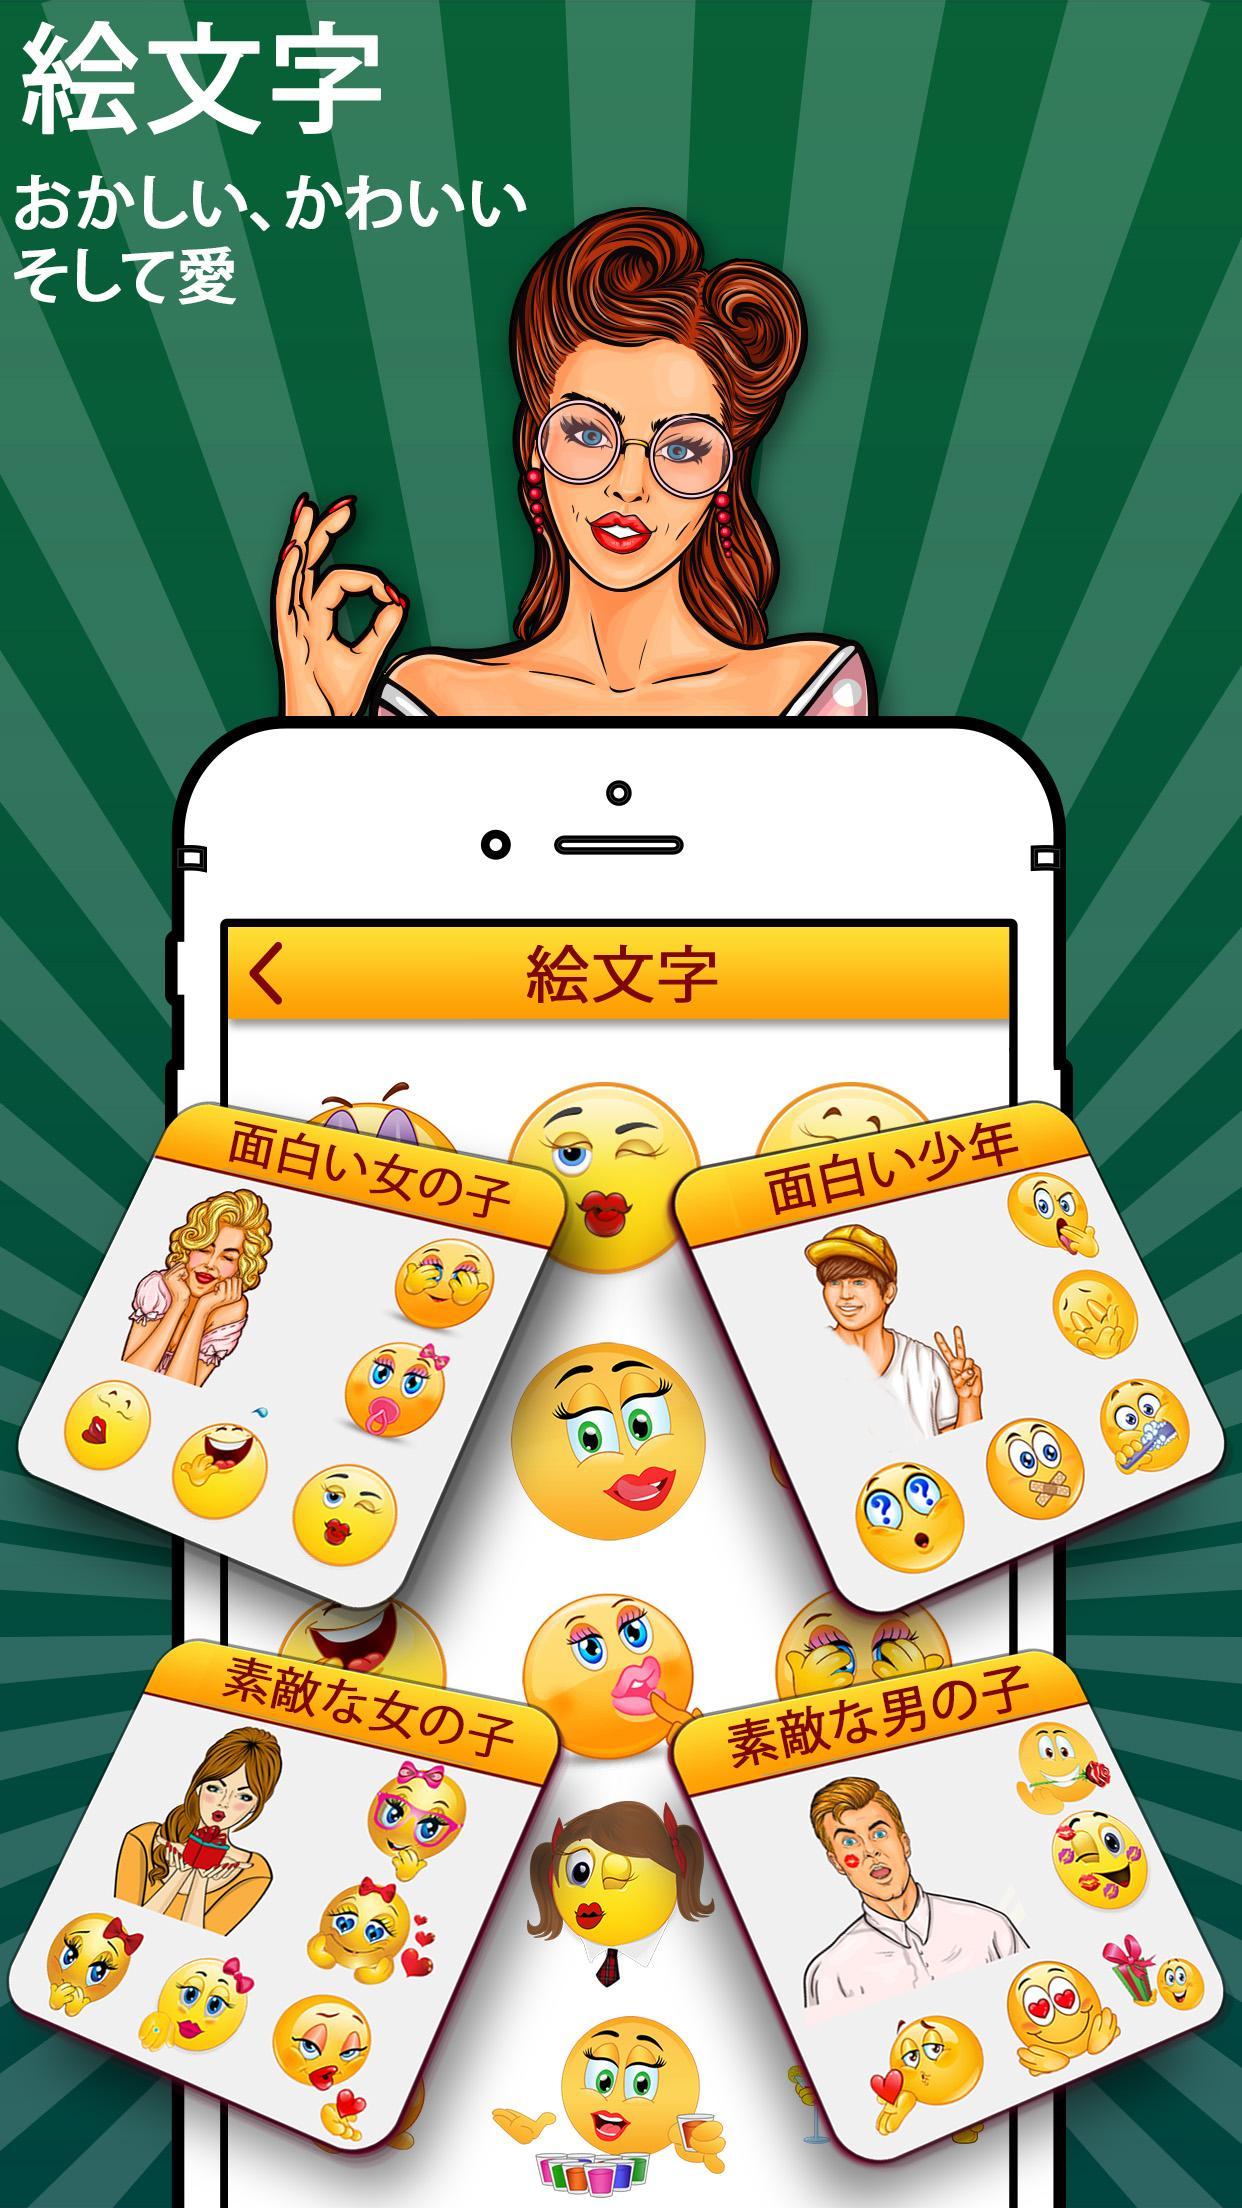 絵文字 ステッカー あなたの感情を共有する 表情 メッセージ絵文字 絵文字 アプリ For Android Apk Download